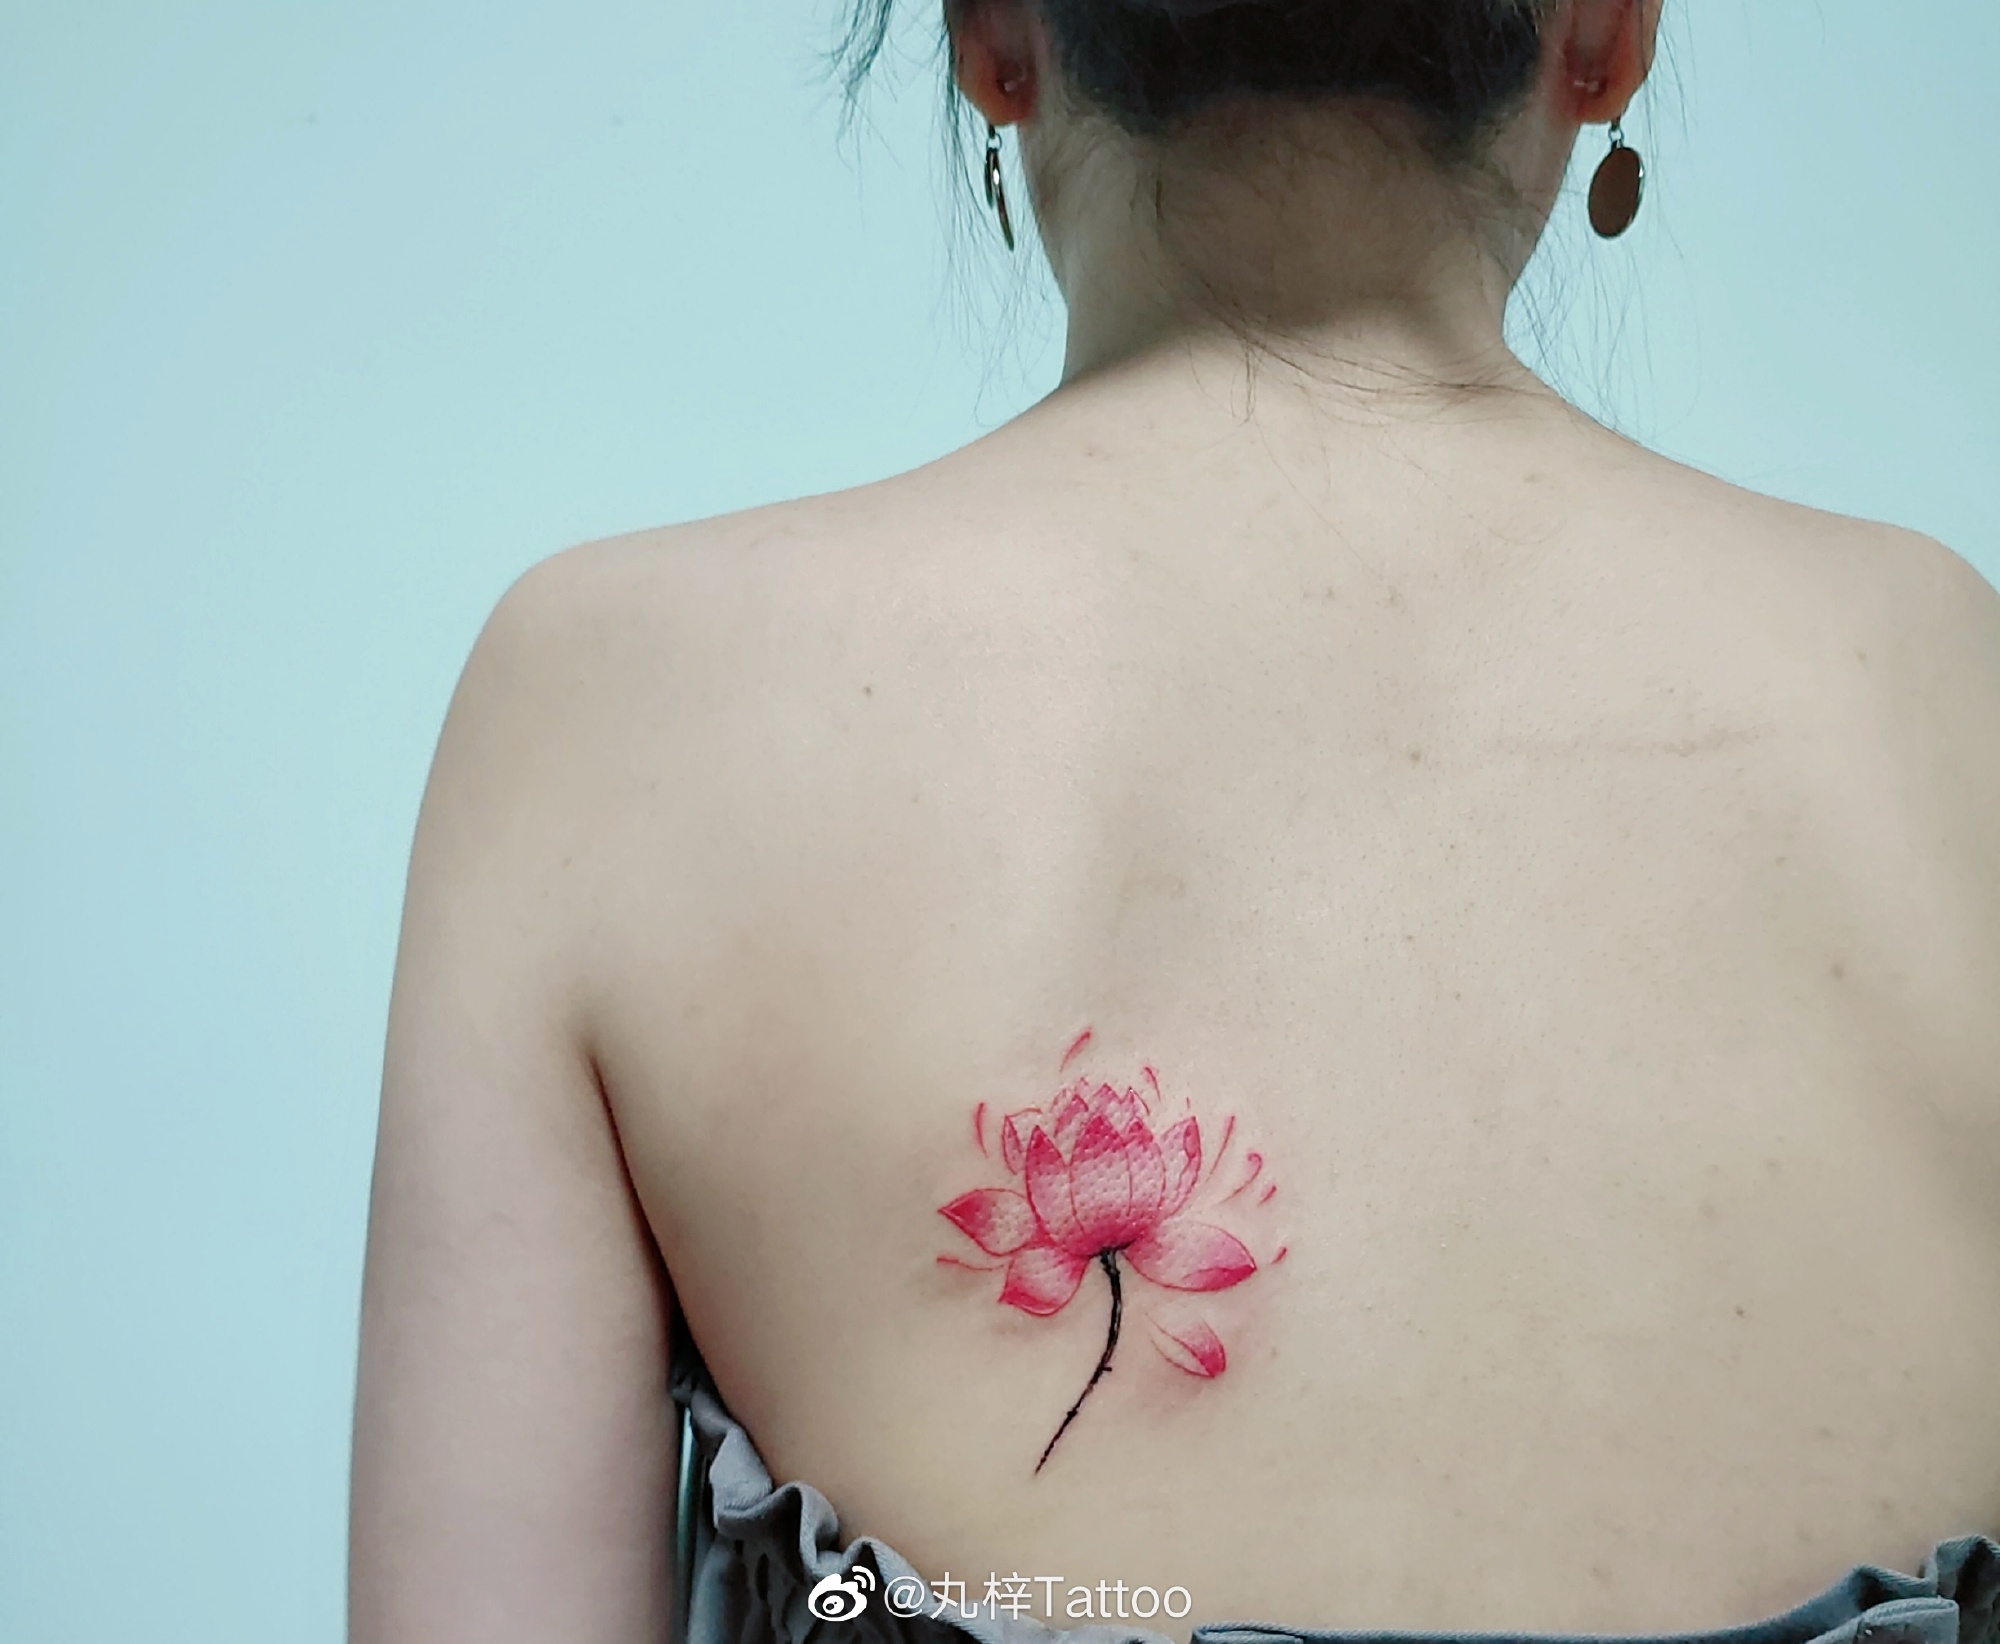 小臂水彩莲花纹身图案 - 广州纹彩刺青